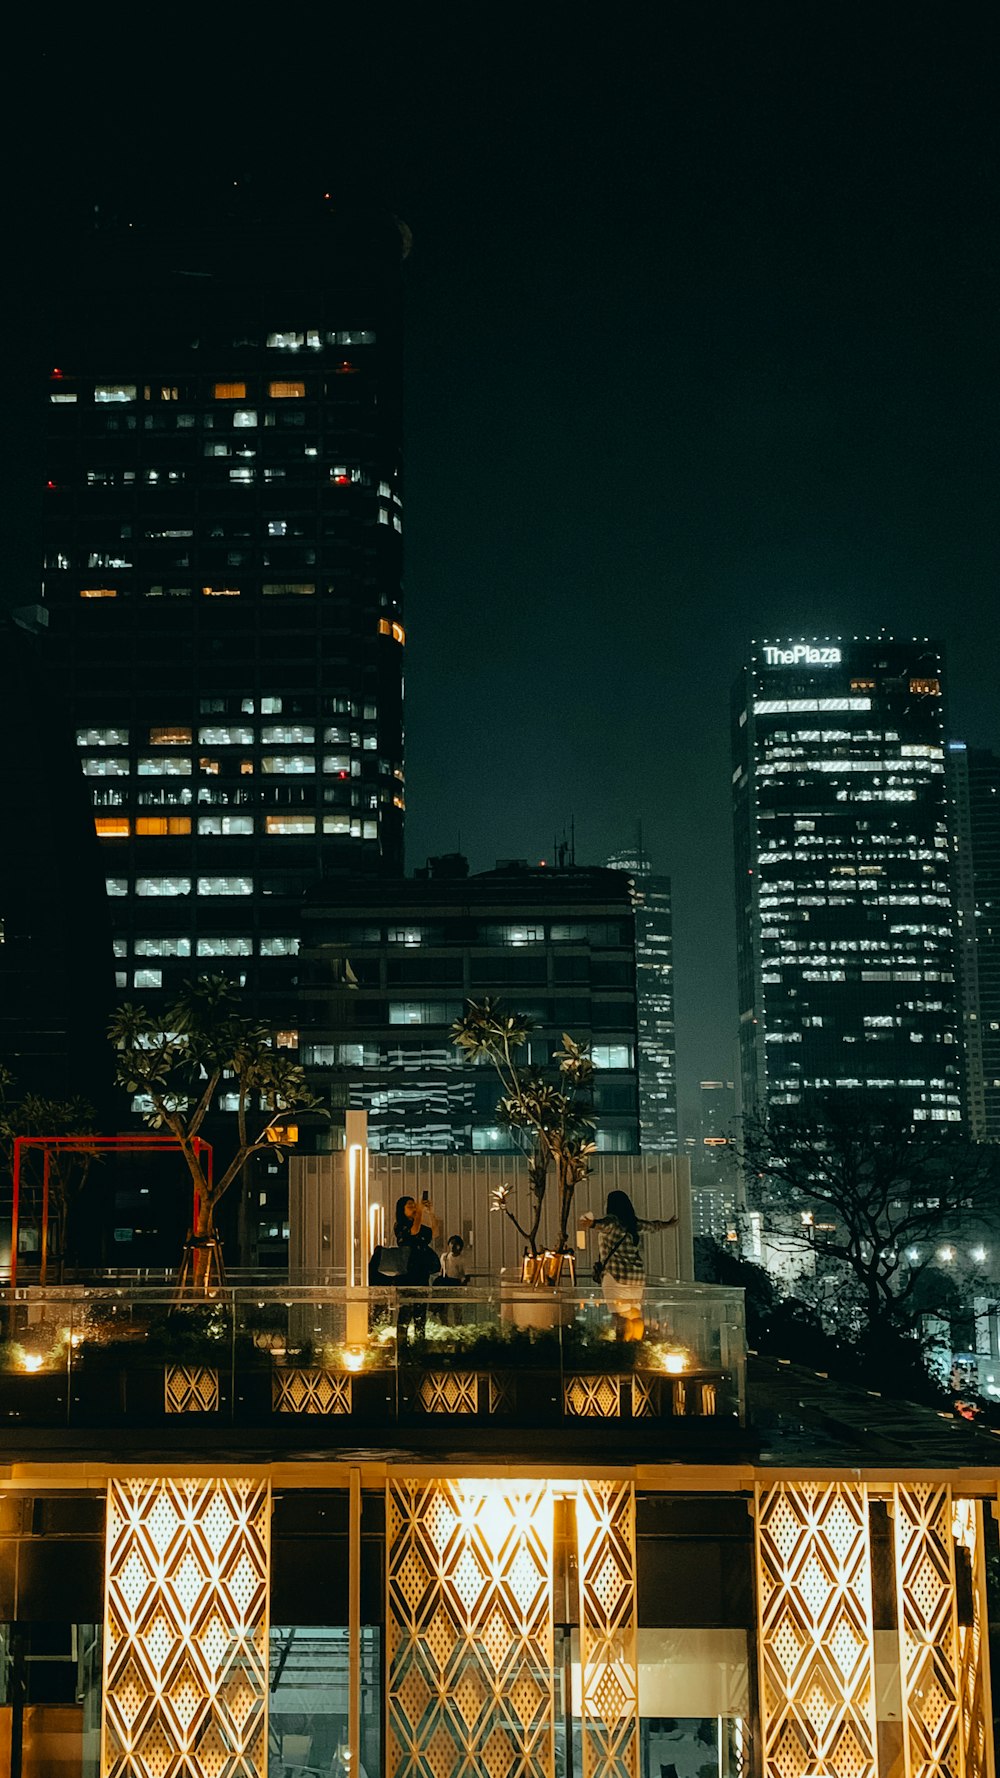 Une vue nocturne d’une ville avec de grands immeubles